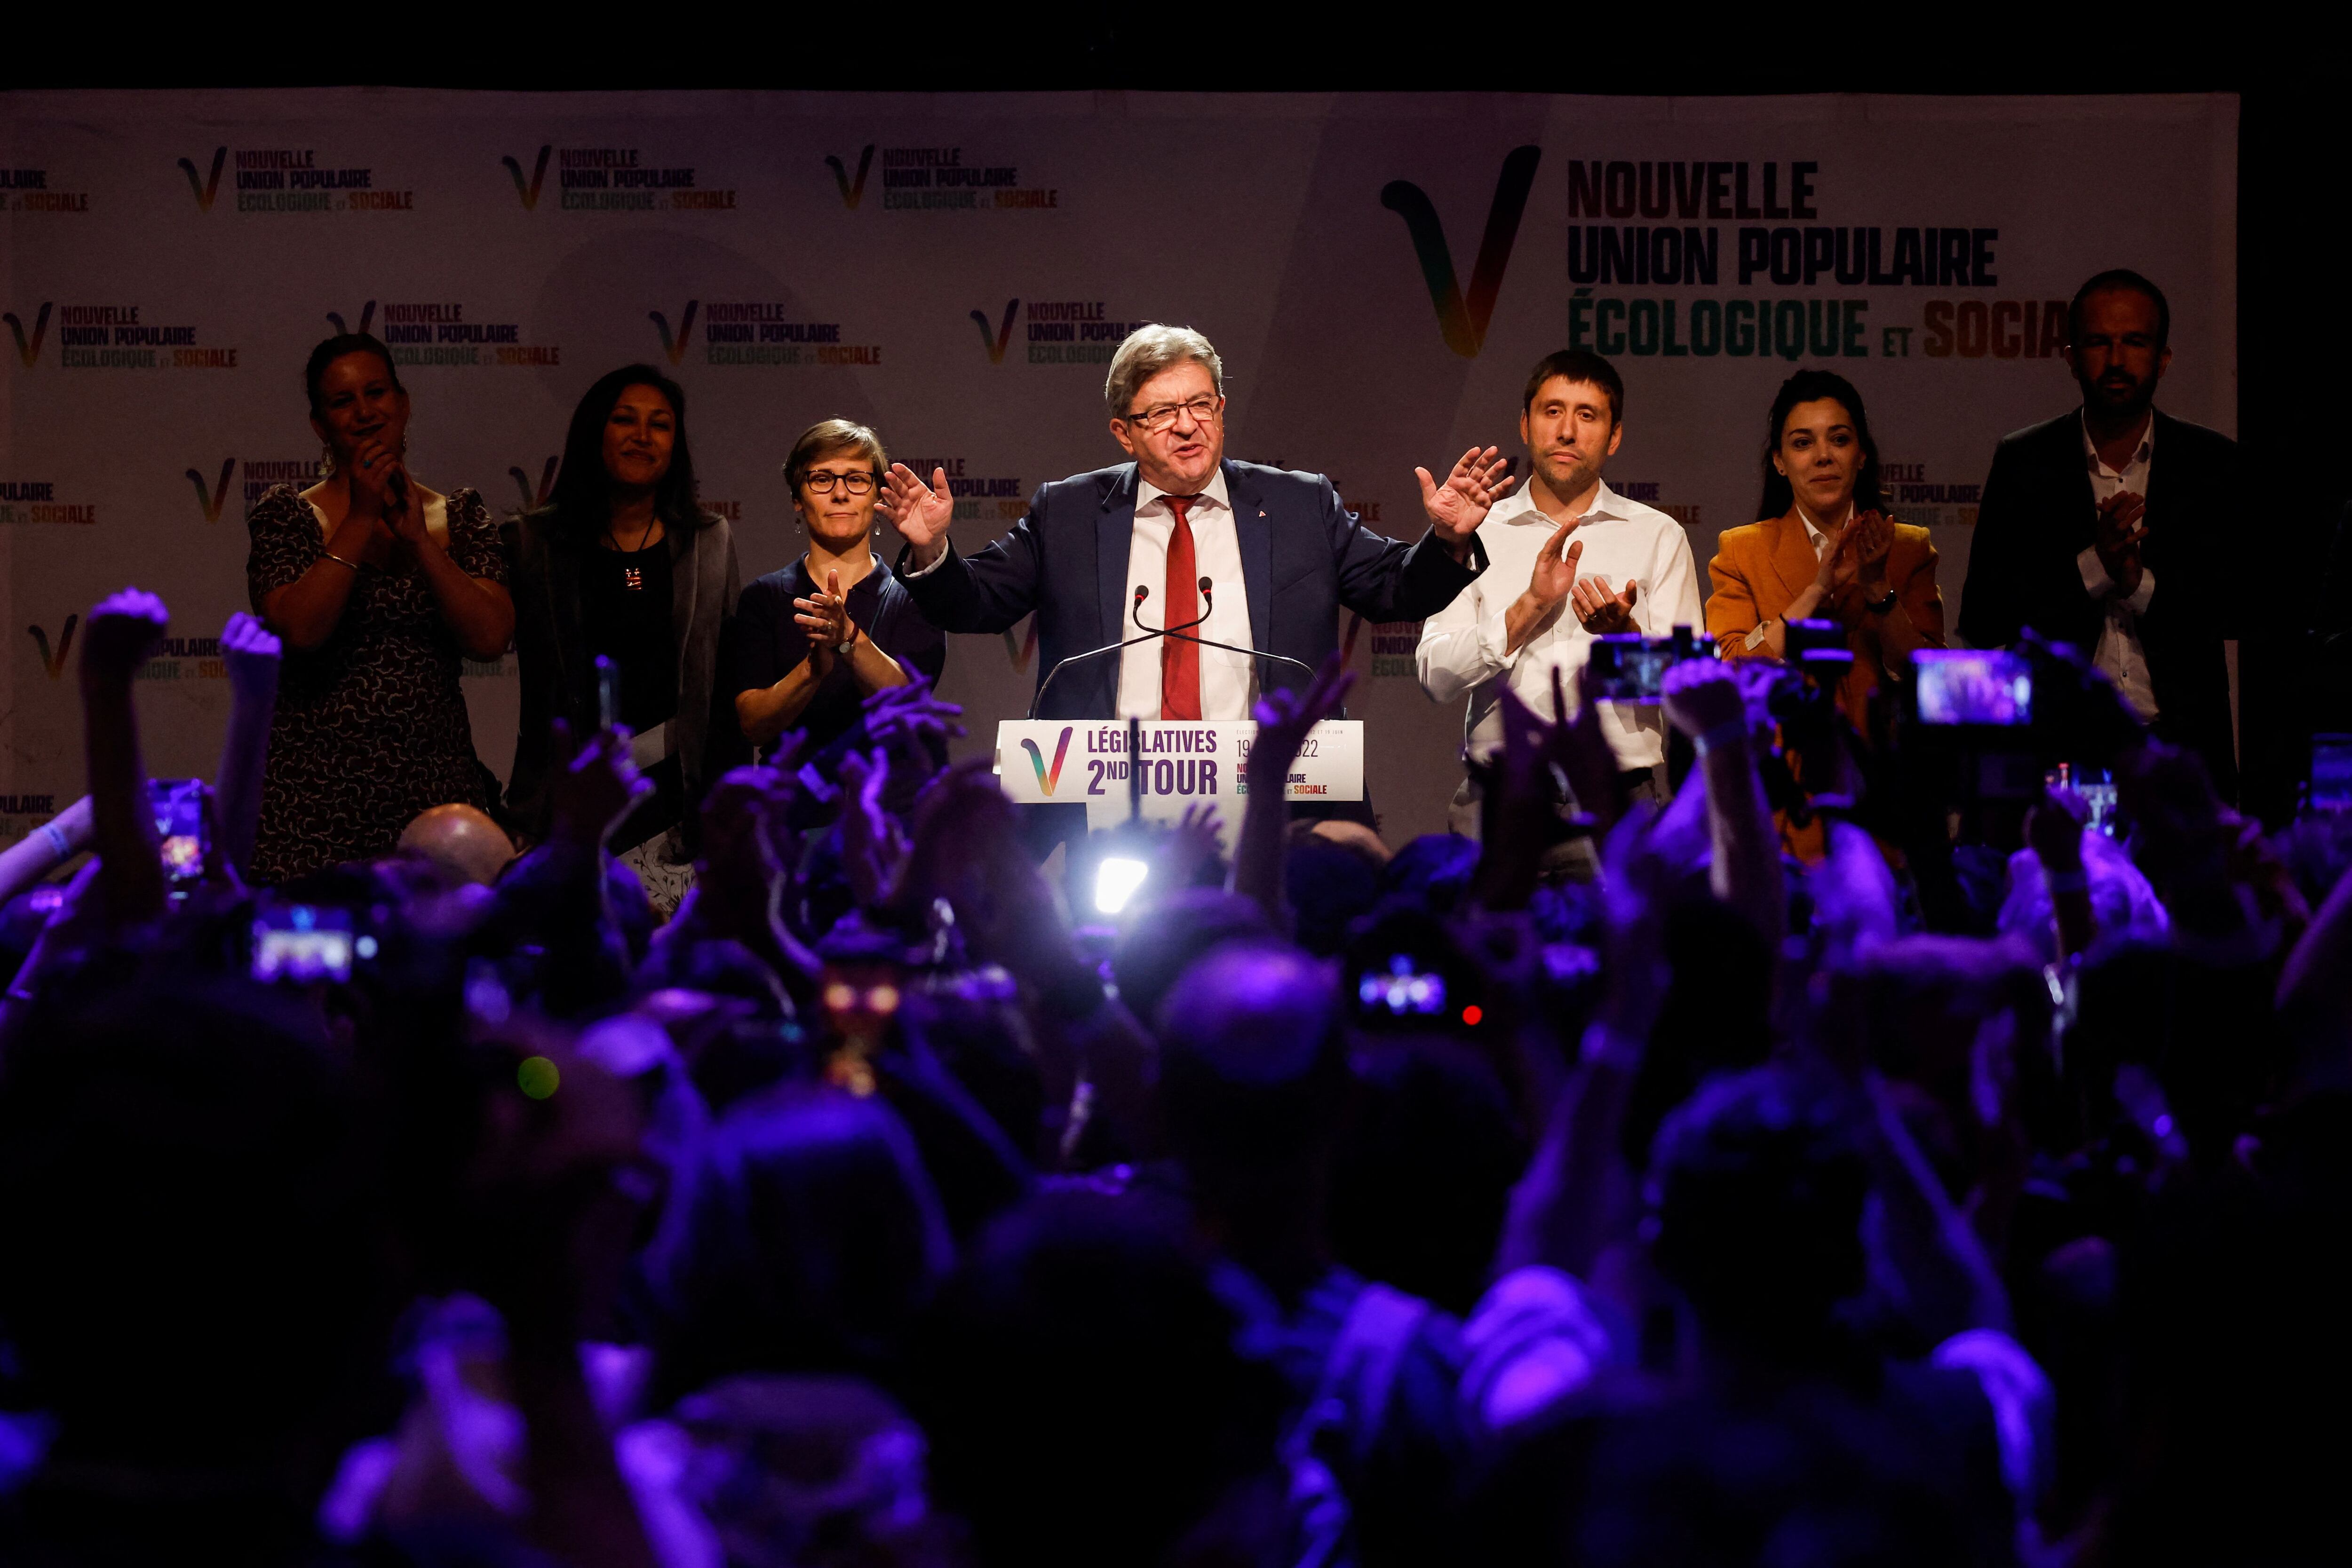 Jean-Luc Mélenchon, líder del partido de la oposición francesa, gesticula mientras pronuncia un discurso tras los primeros resultados de la segunda ronda de las elecciones parlamentarias francesas, en París.